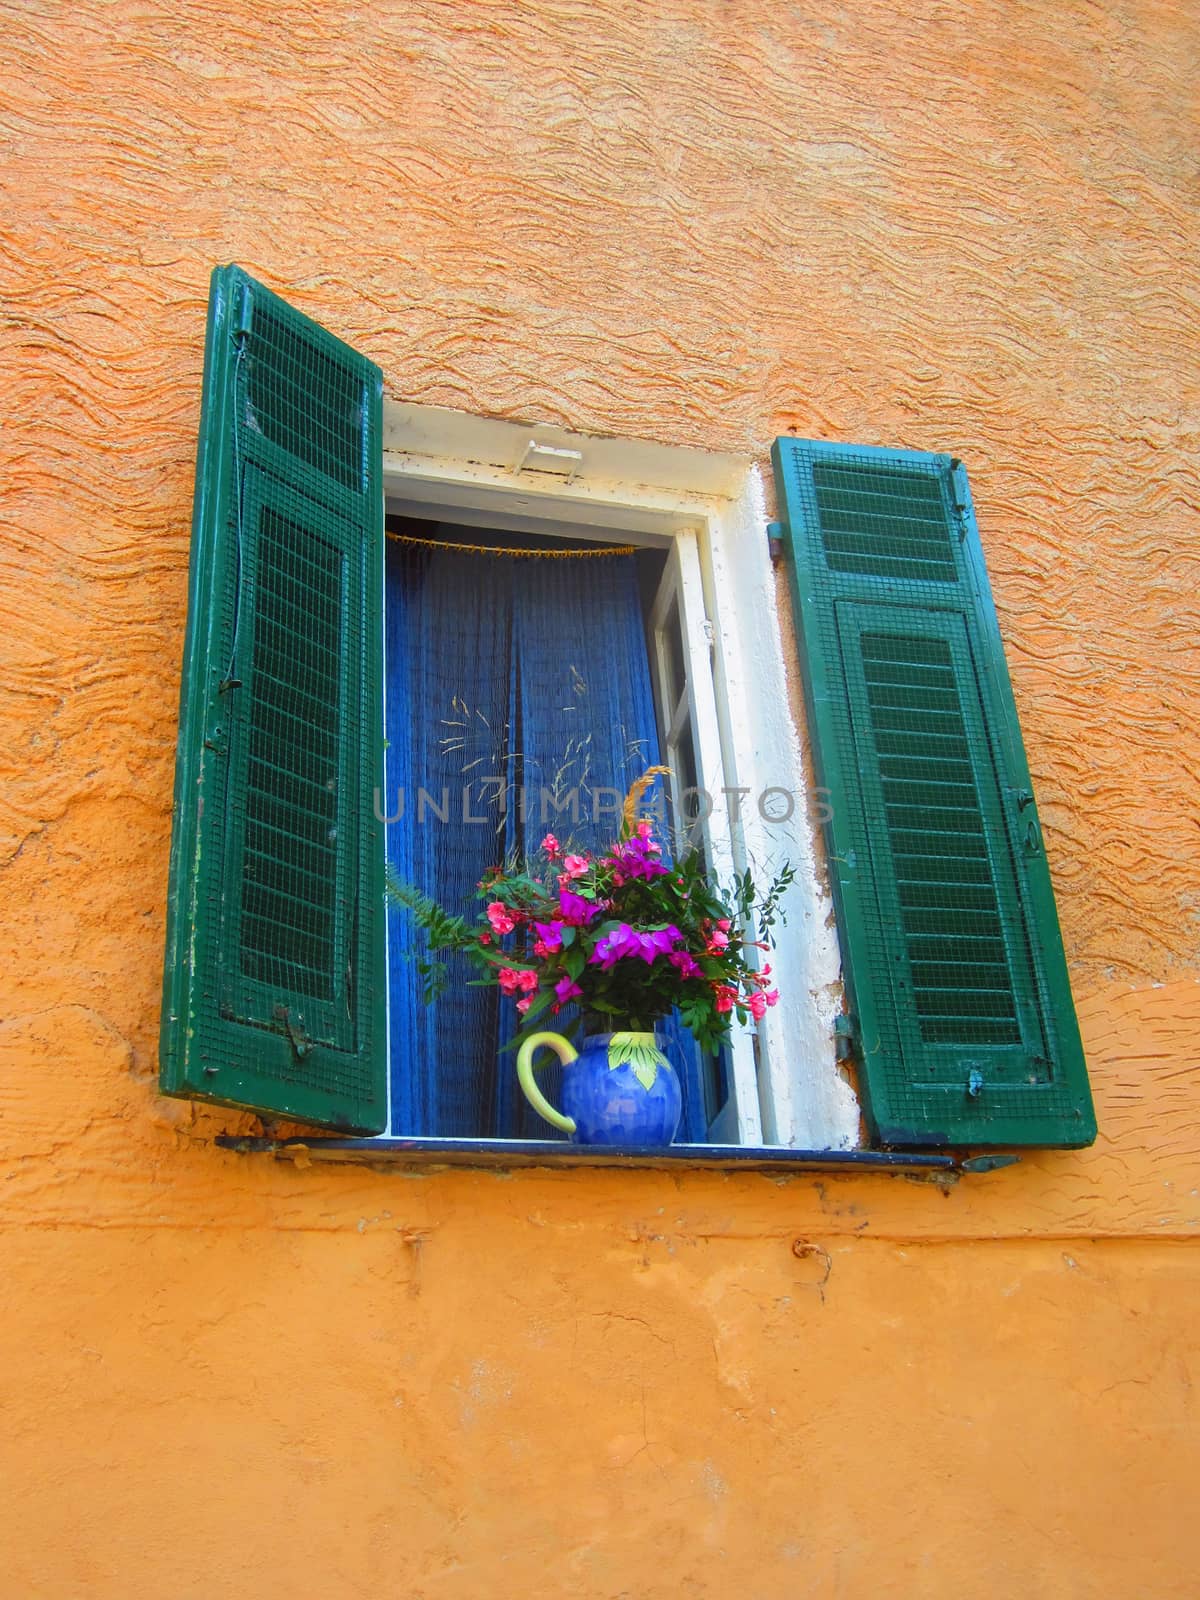 Window with flowers by jol66